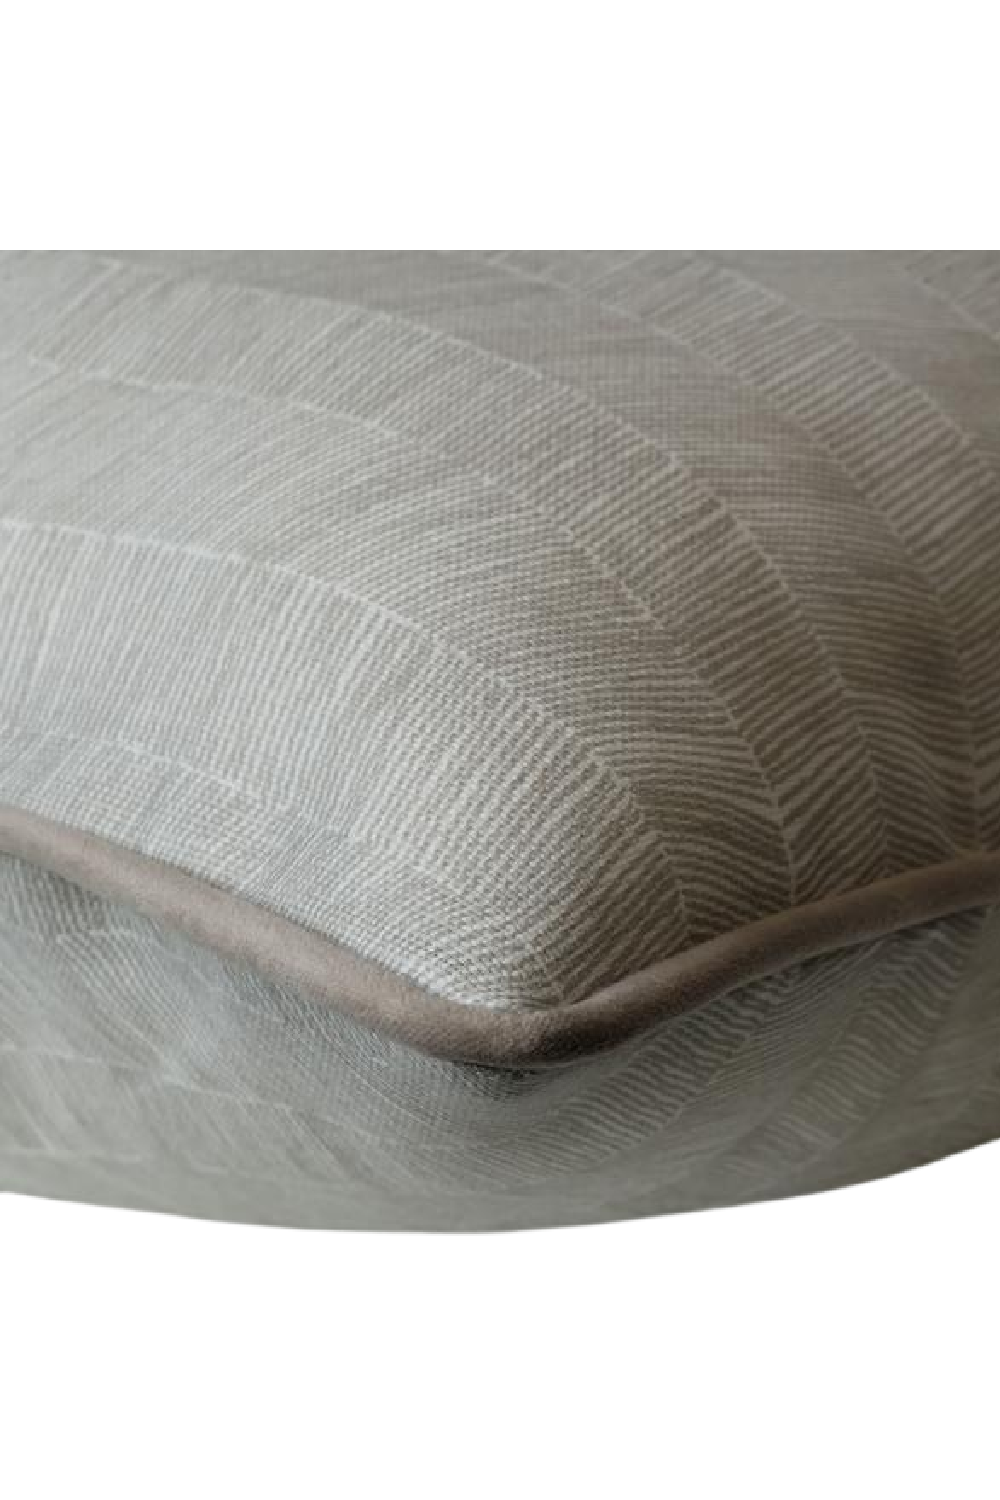 Herringbone Outdoor Cushion | Andrew Martin Delta | OROA